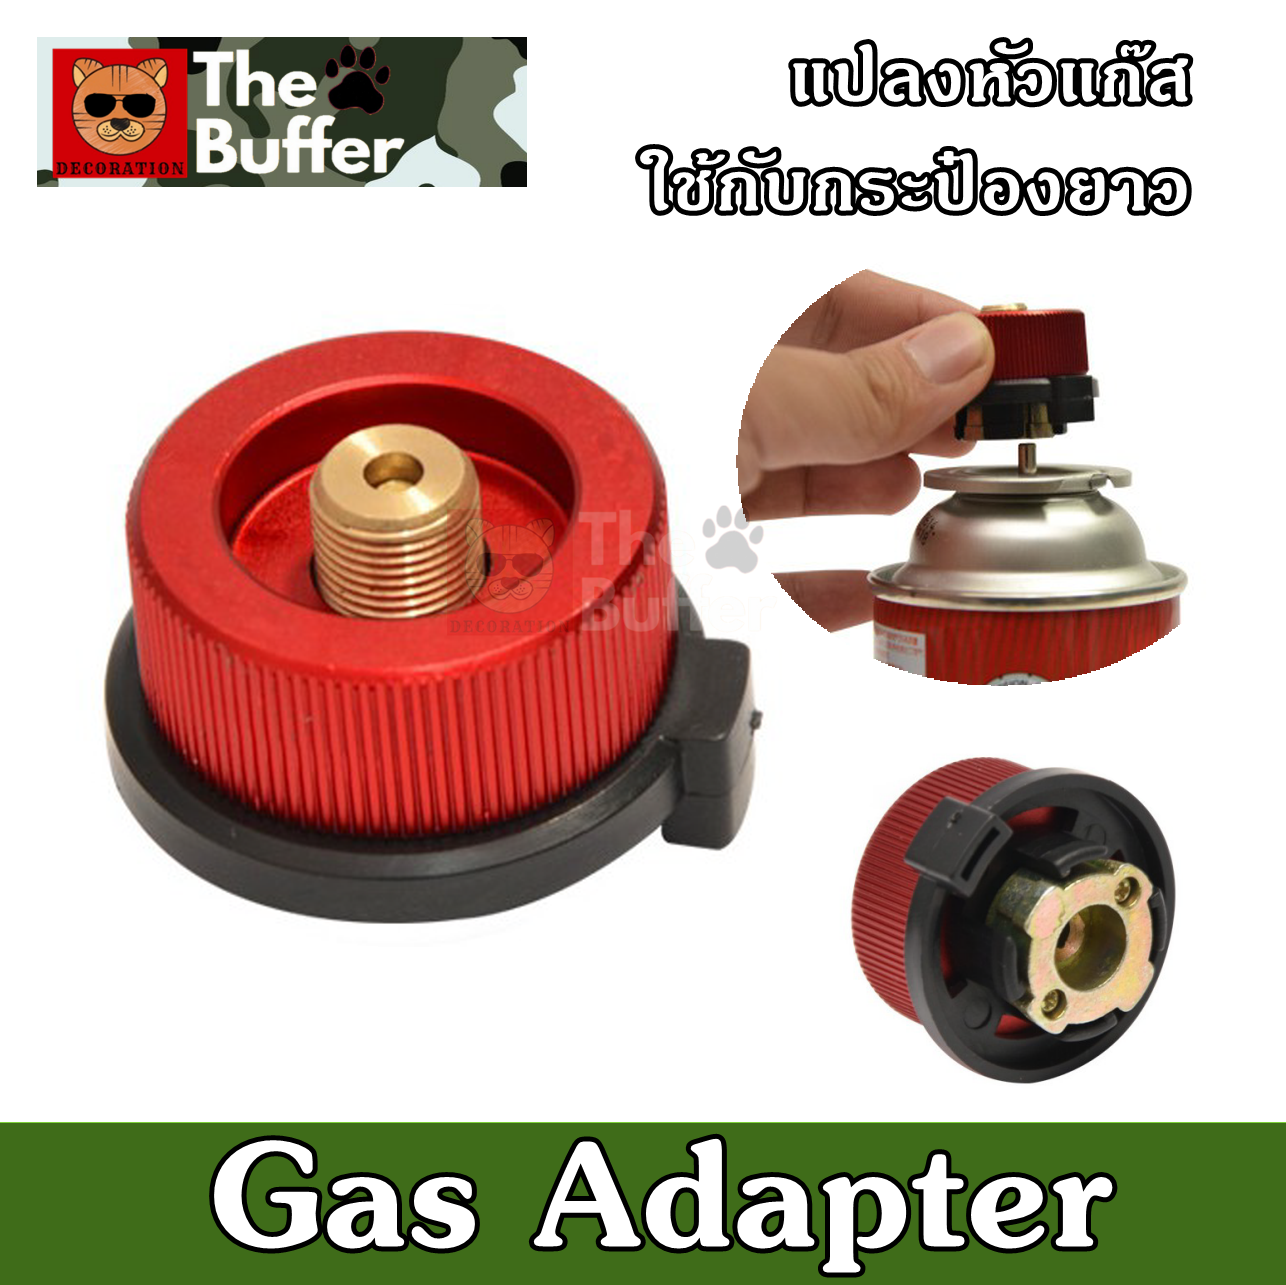 Adapter แปลงหัวแก๊สใช้กับกระป่องยาว อะแดปเตอร์ หัวแปลงเตาแก๊สพกพา ใช้สำหรับเป็นตัวเชื่อมระหว่างกระป๋องแก๊สกับเตาเดินป่า